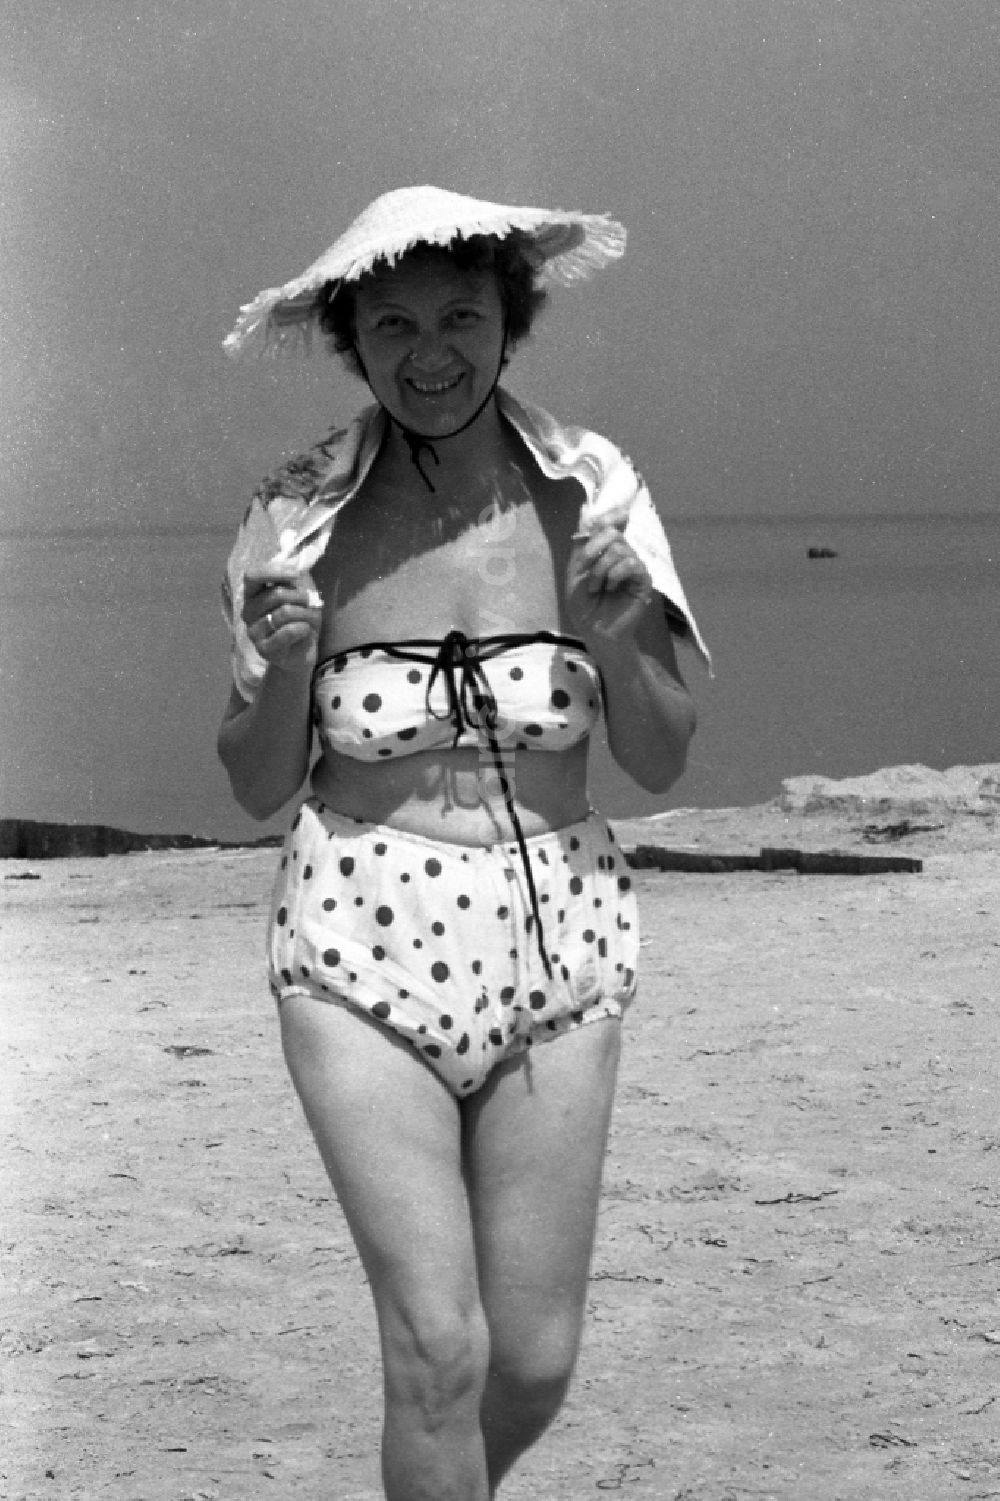 Heringsdorf: Frau mit Strohhut und im Bikini am Strand der Ostsee in Heringsdorf in Mecklenburg-Vorpommern in der DDR